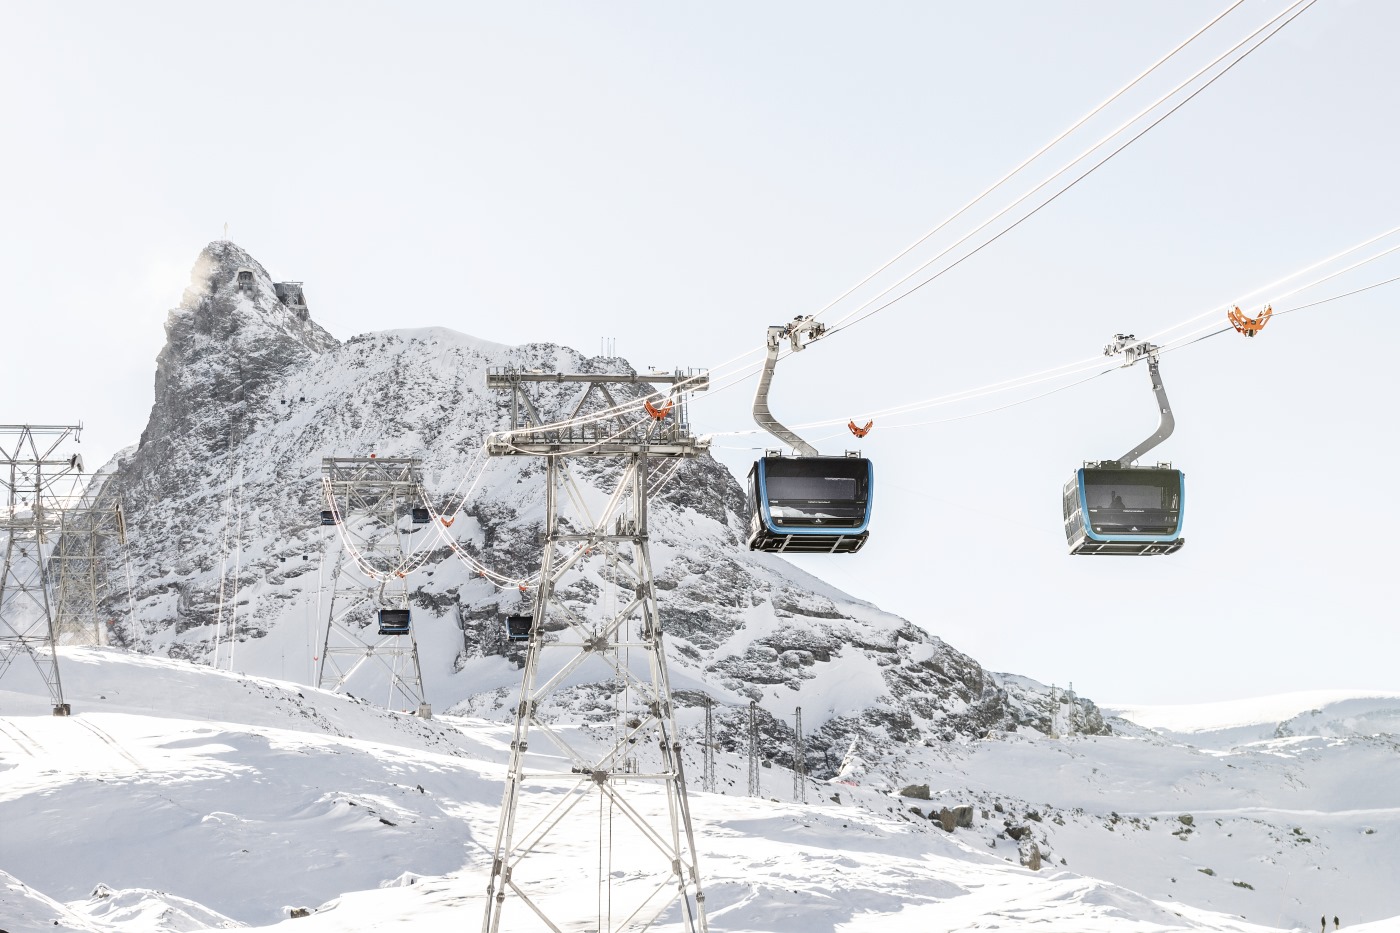 La conexión entre Zermatt y Monterosa para crear un área esquiable de 530 km más cerca